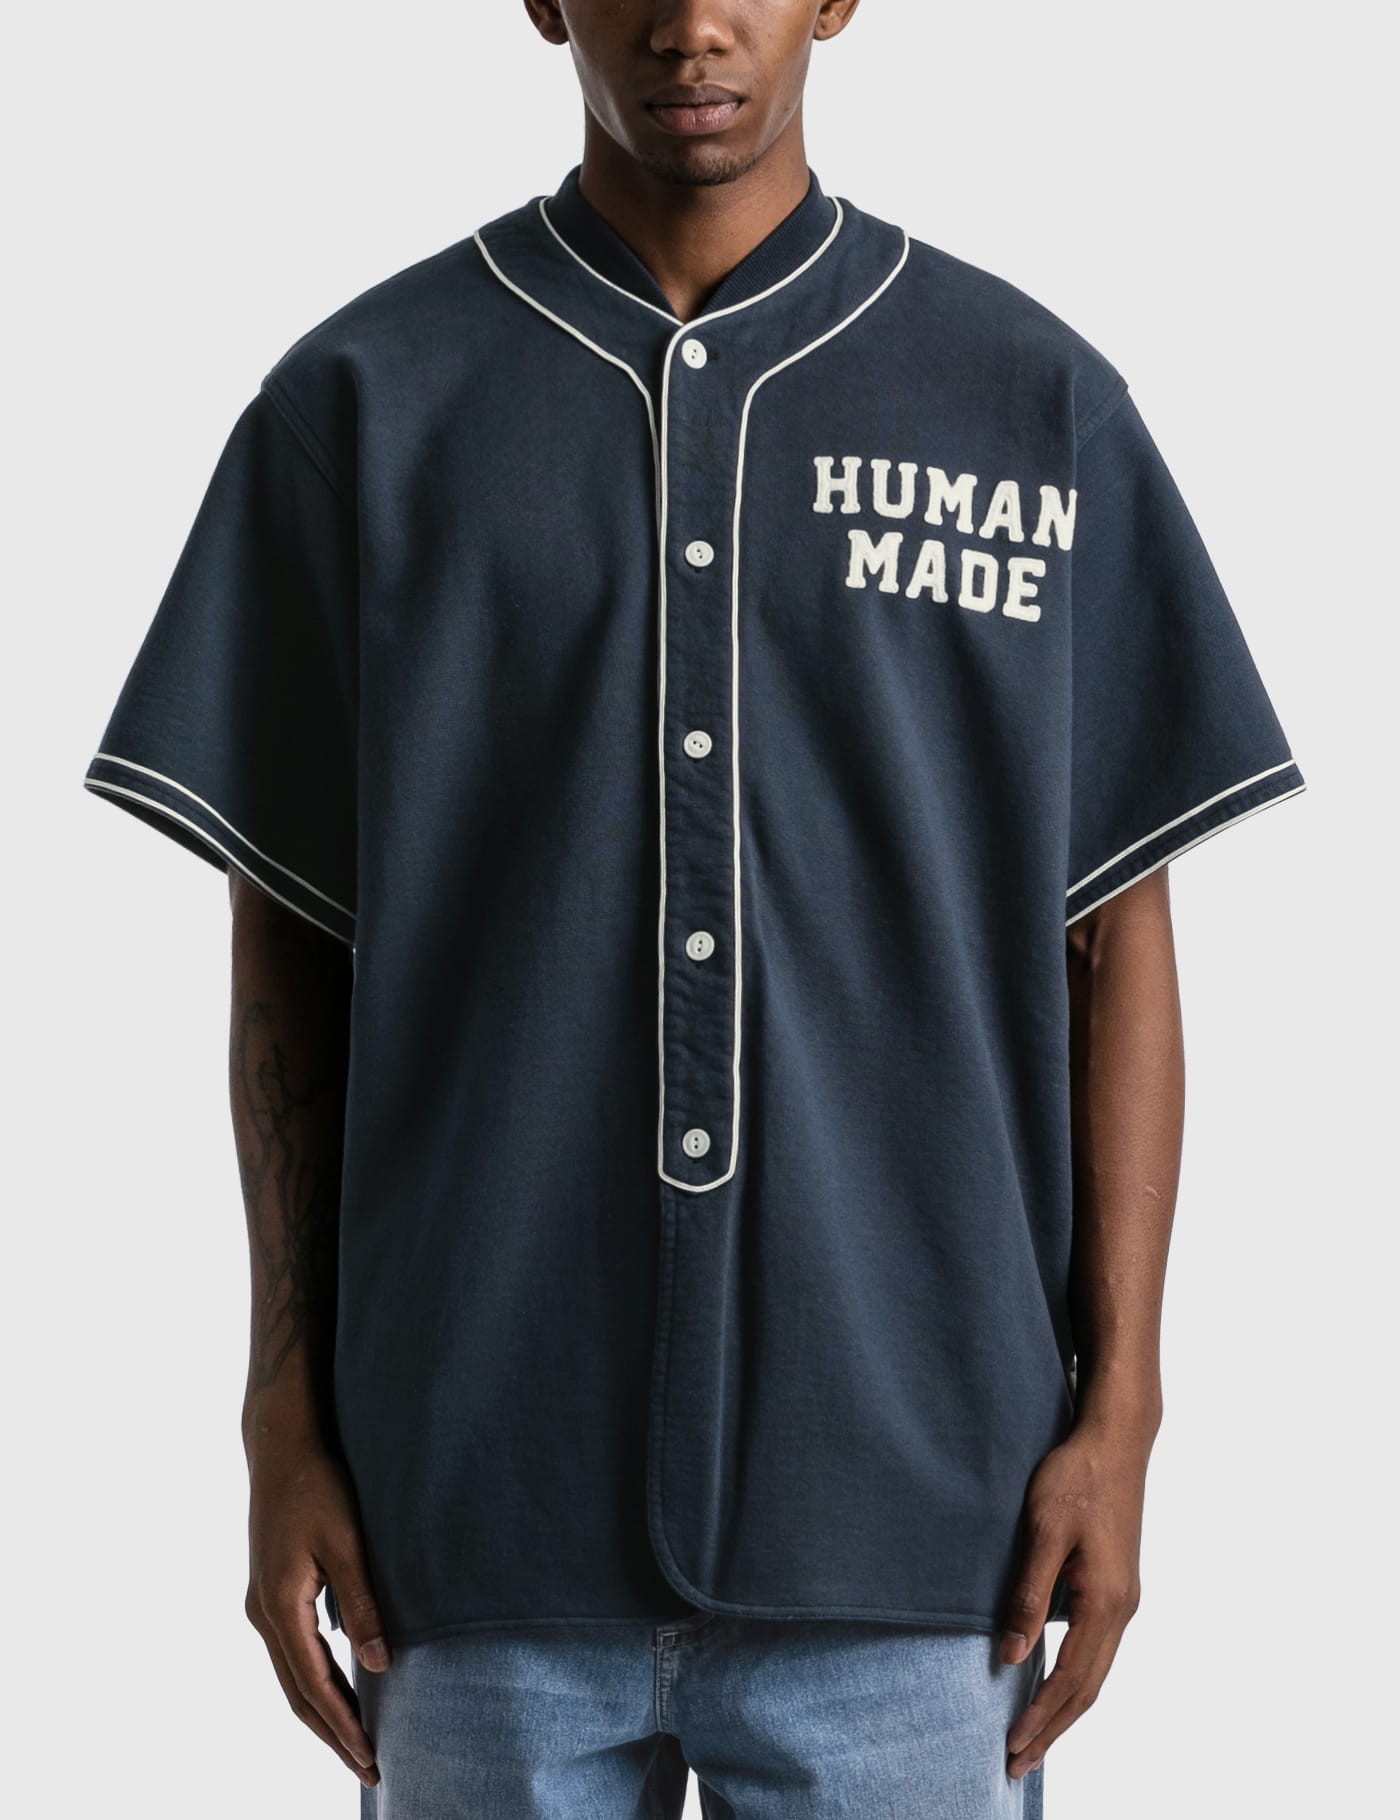 HUMAN MADE BASEBALL SHIRT ベースボールシャツ |